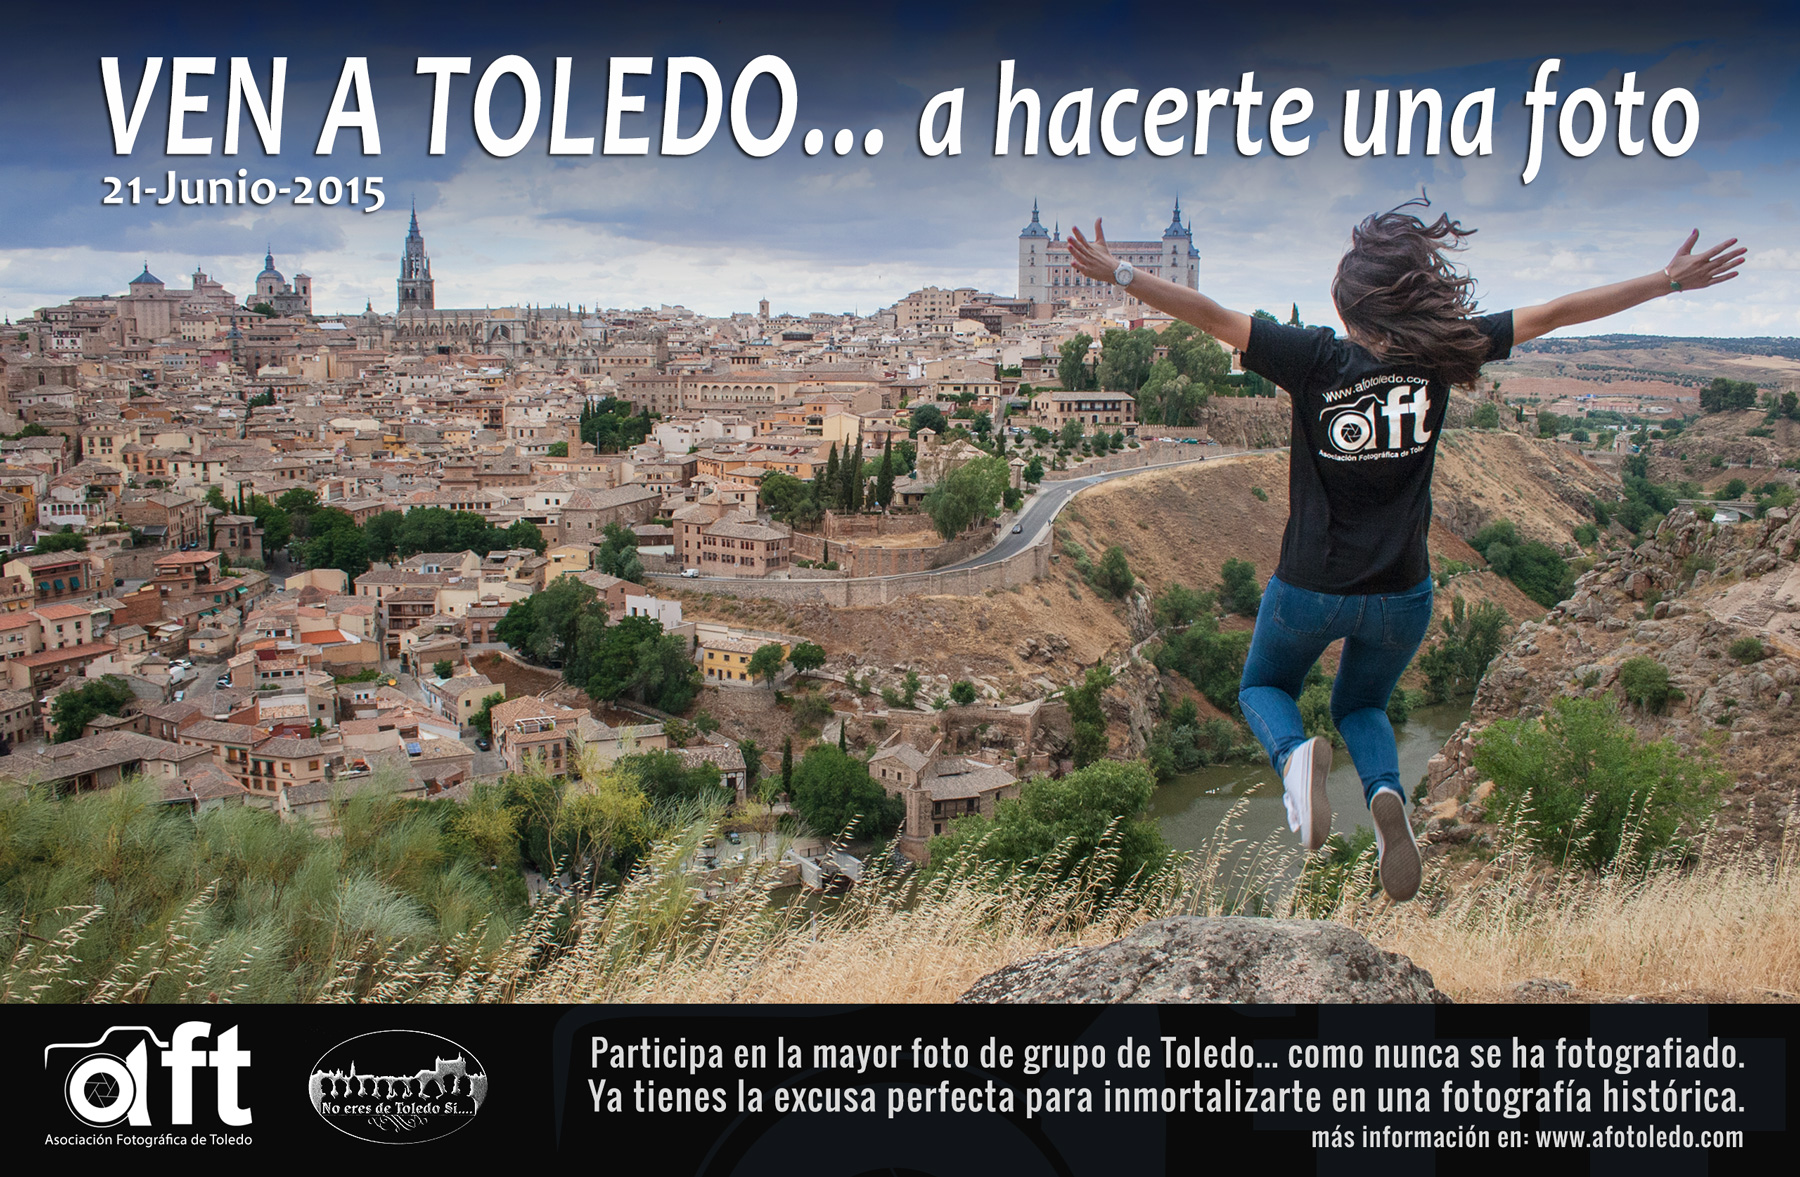 La Asociación Fotográfica de Toledo invita a conseguir la mayor panorámica realizada en la ciudad